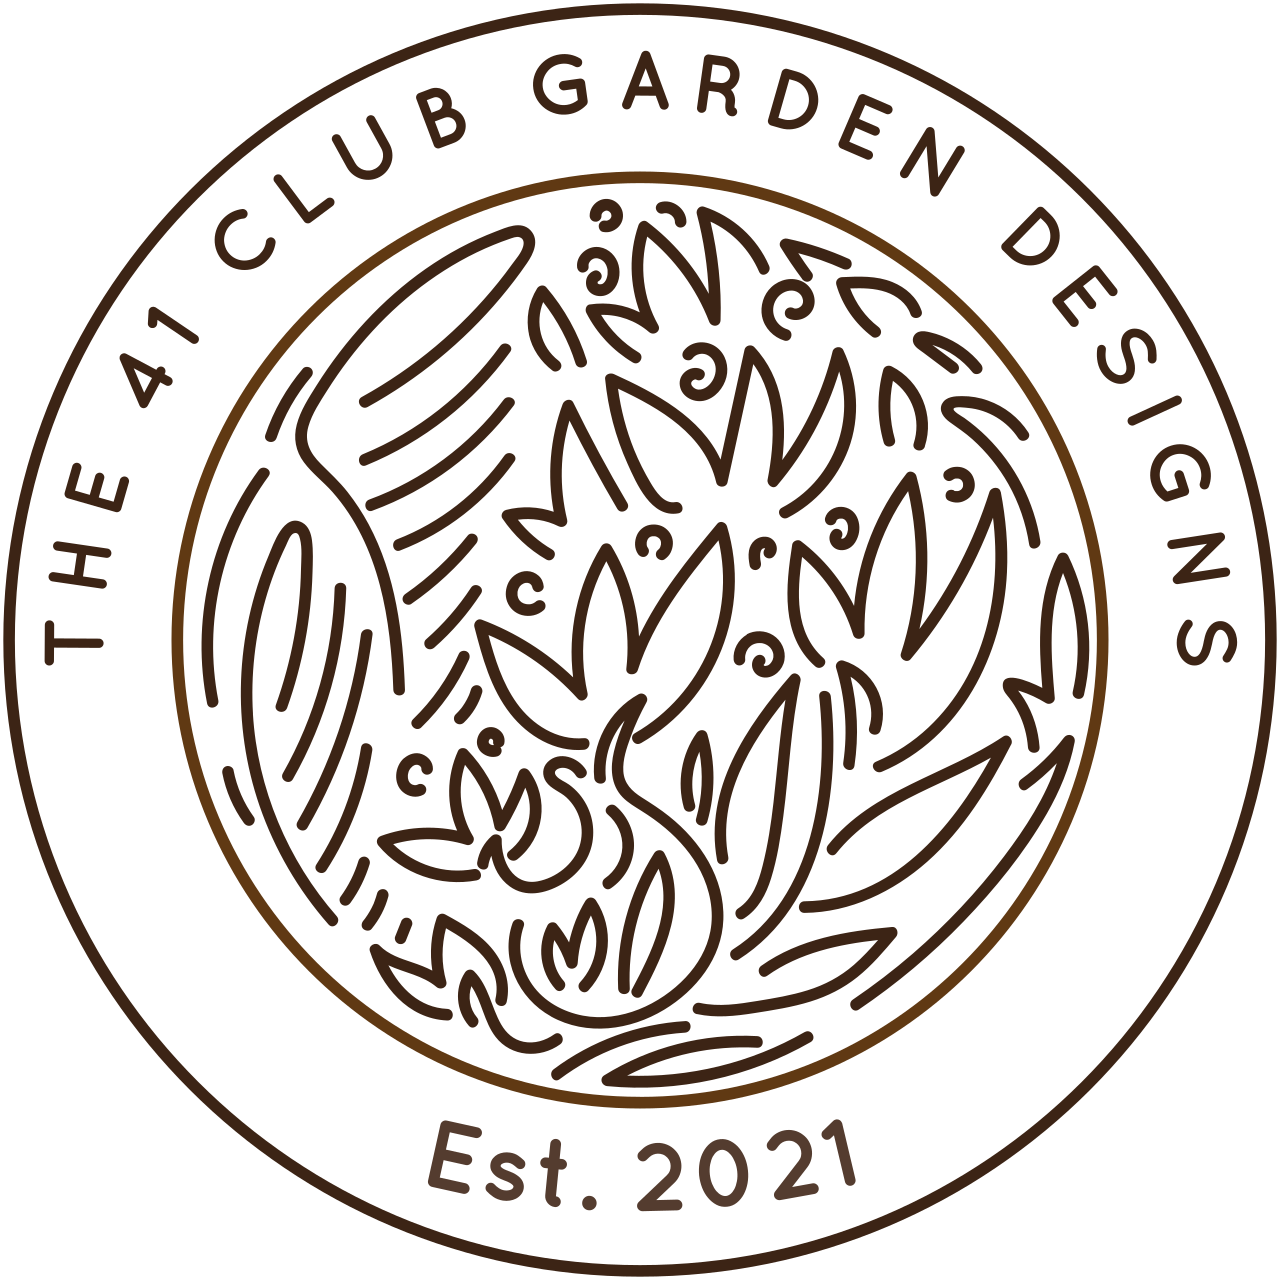 The 41 Club Gardens's logo